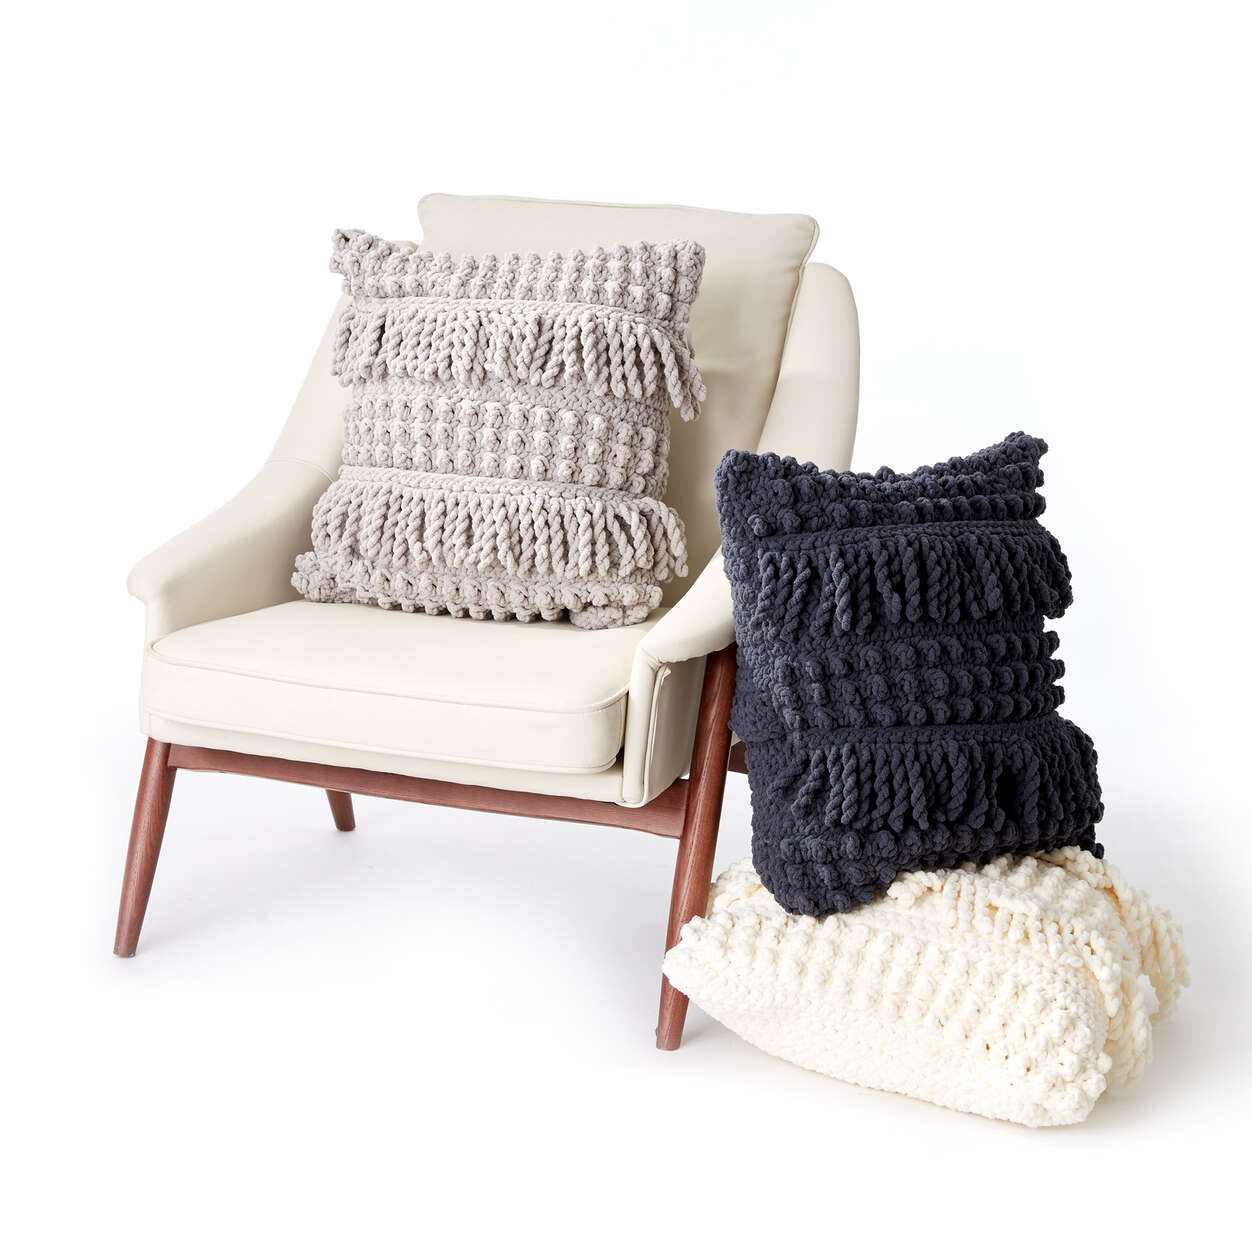 Bobble & Fringe Crochet Pillow - Free Crochet Pattern